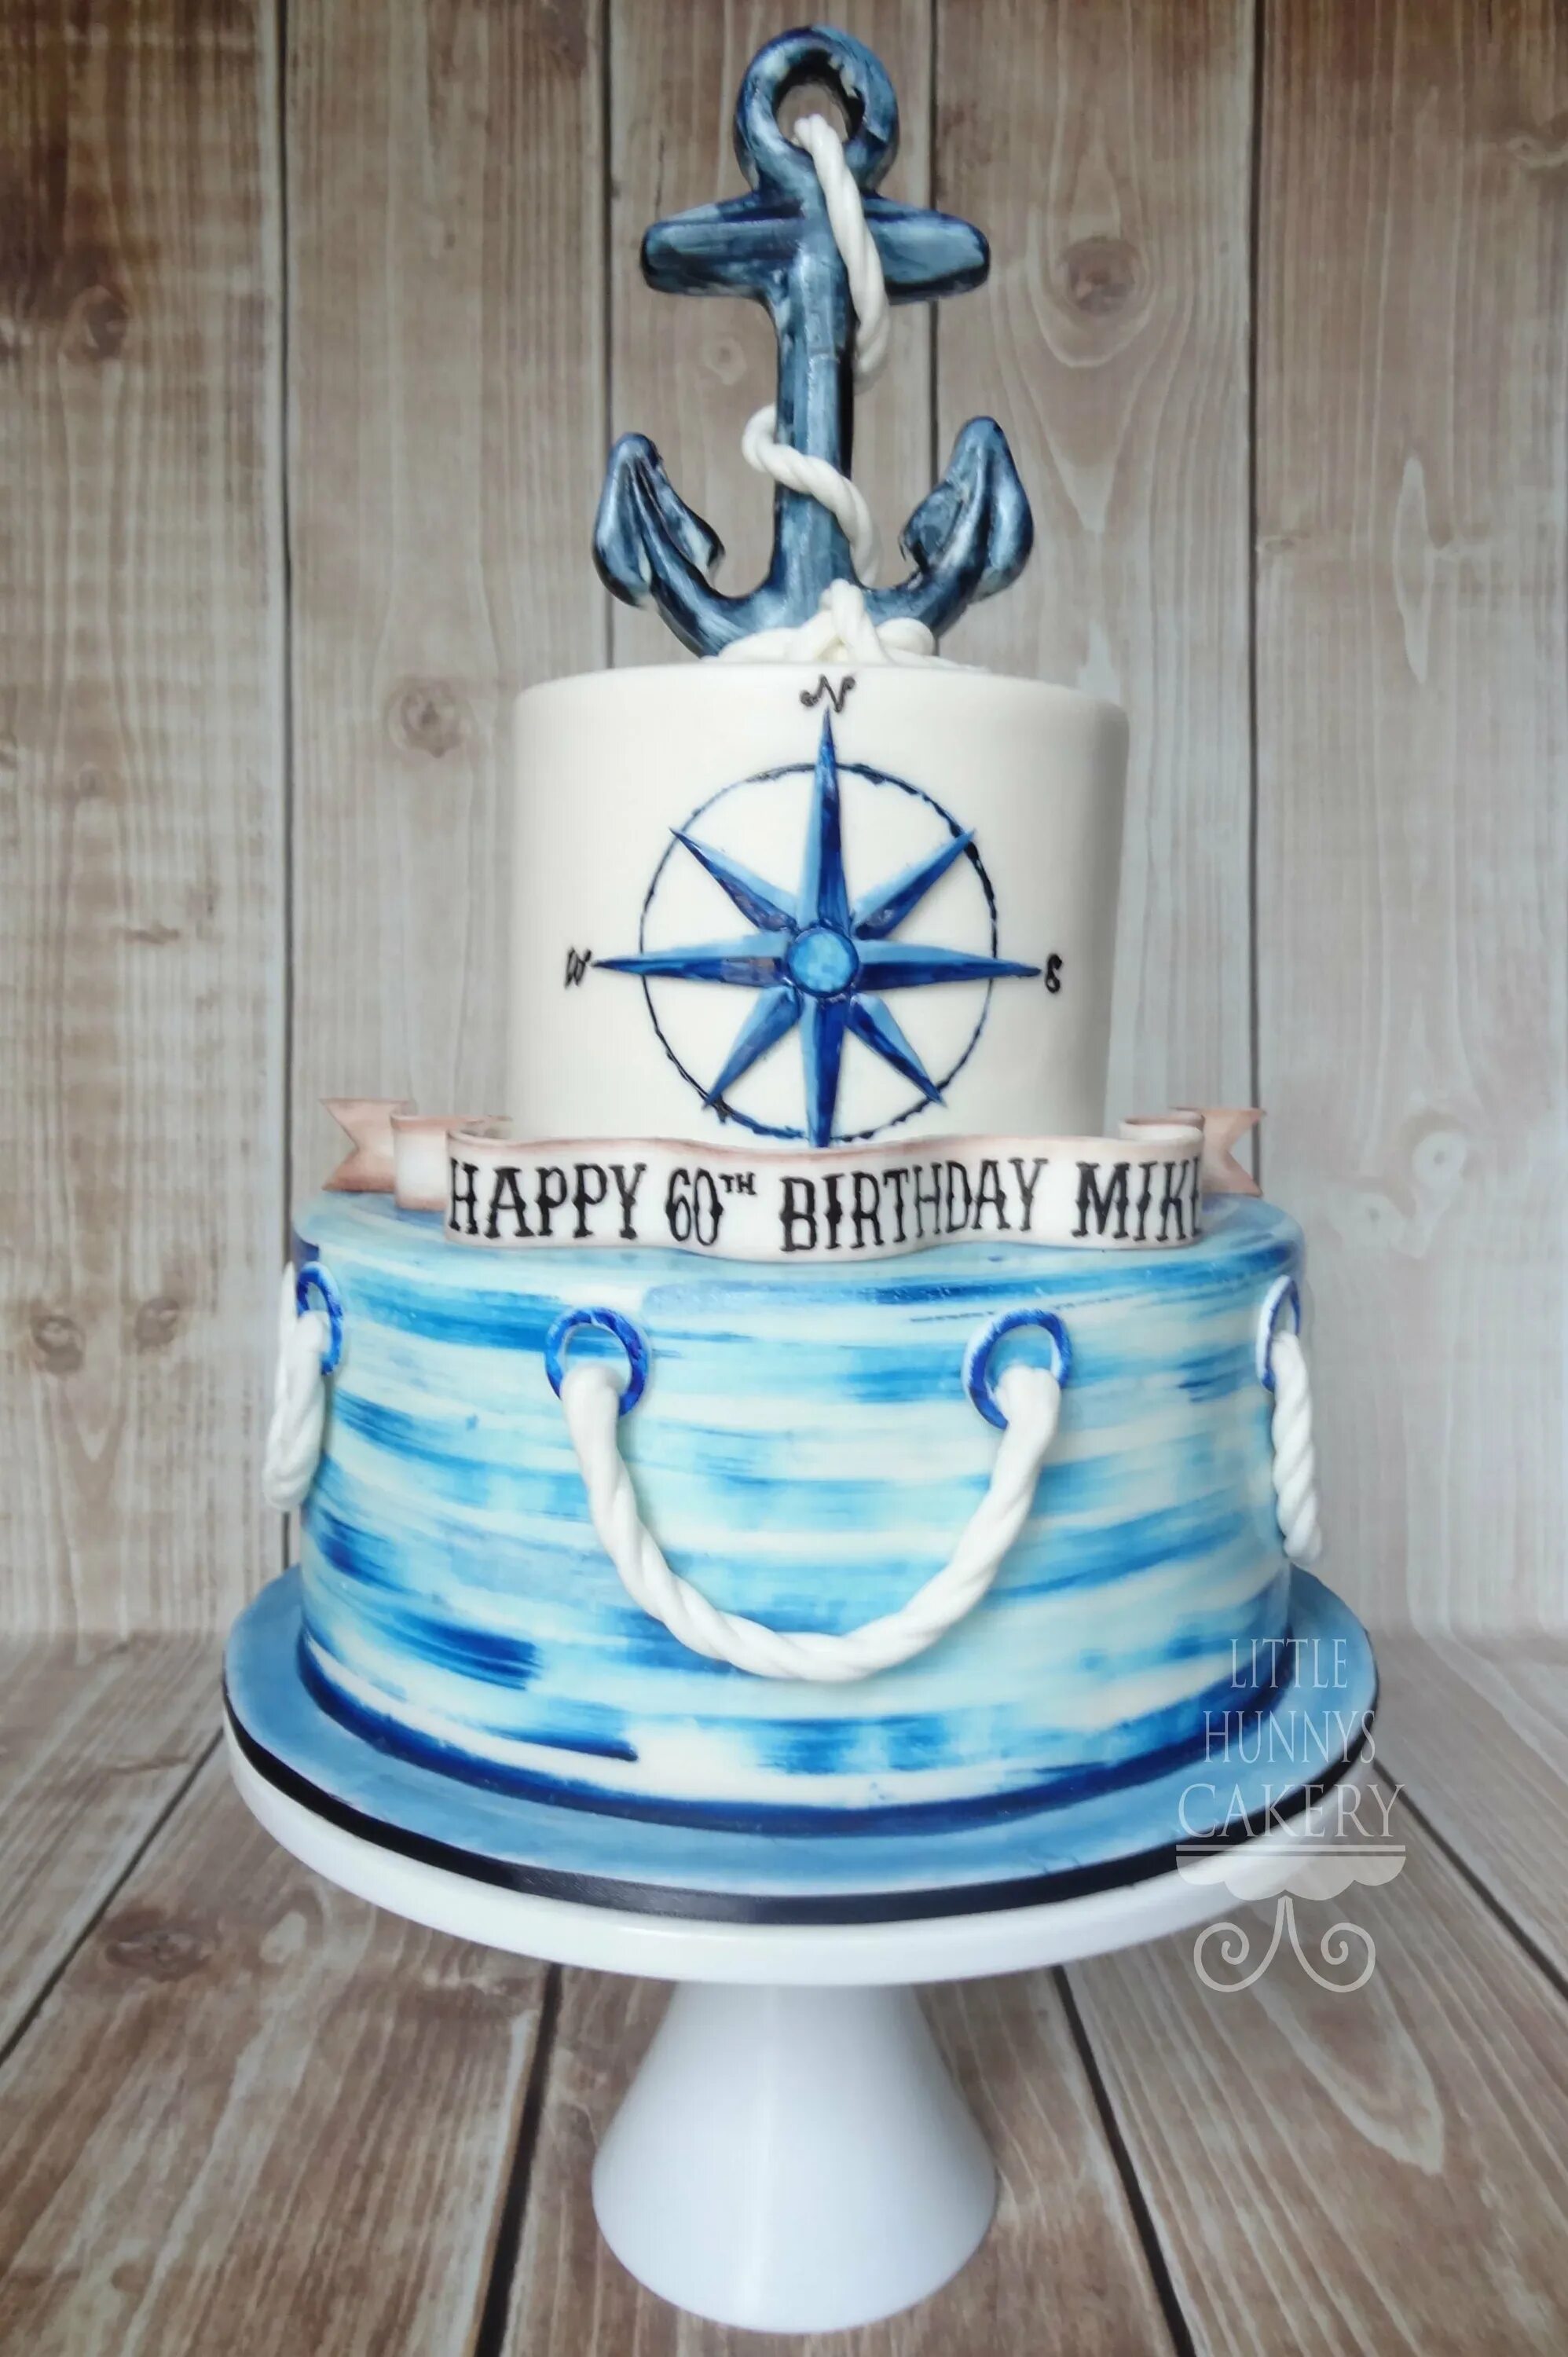 Морской день рождения мужчине. Торт в морском стиле. Торт с морской тематикой для мужчины. Торт на день рождения в морской тематике. Торт морской тематики для мужчин на день рождение.